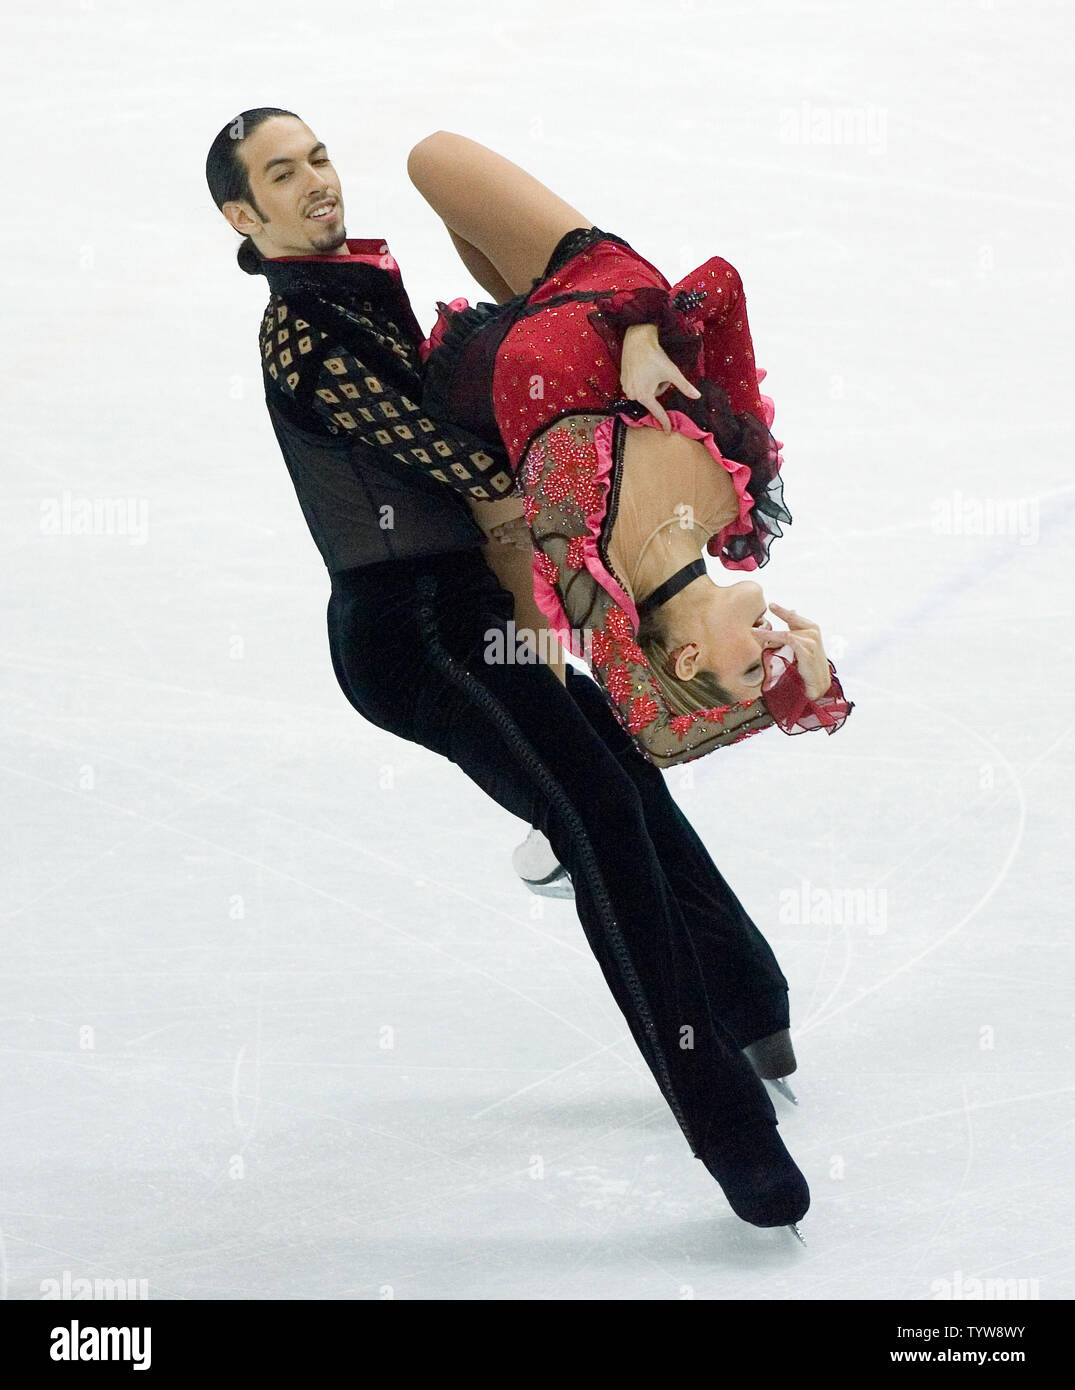 Tanith Belbin und Benjamin Agosto aus den USA eine Flamenco Routine für Ihre freien Tanz in Eis tanzen Eiskunstlauf in der Torino 2006 Winter-olympischen Spiele durchführen, 20. Februar 2006. (UPI Foto/Heinz Ruckemann) Stockfoto